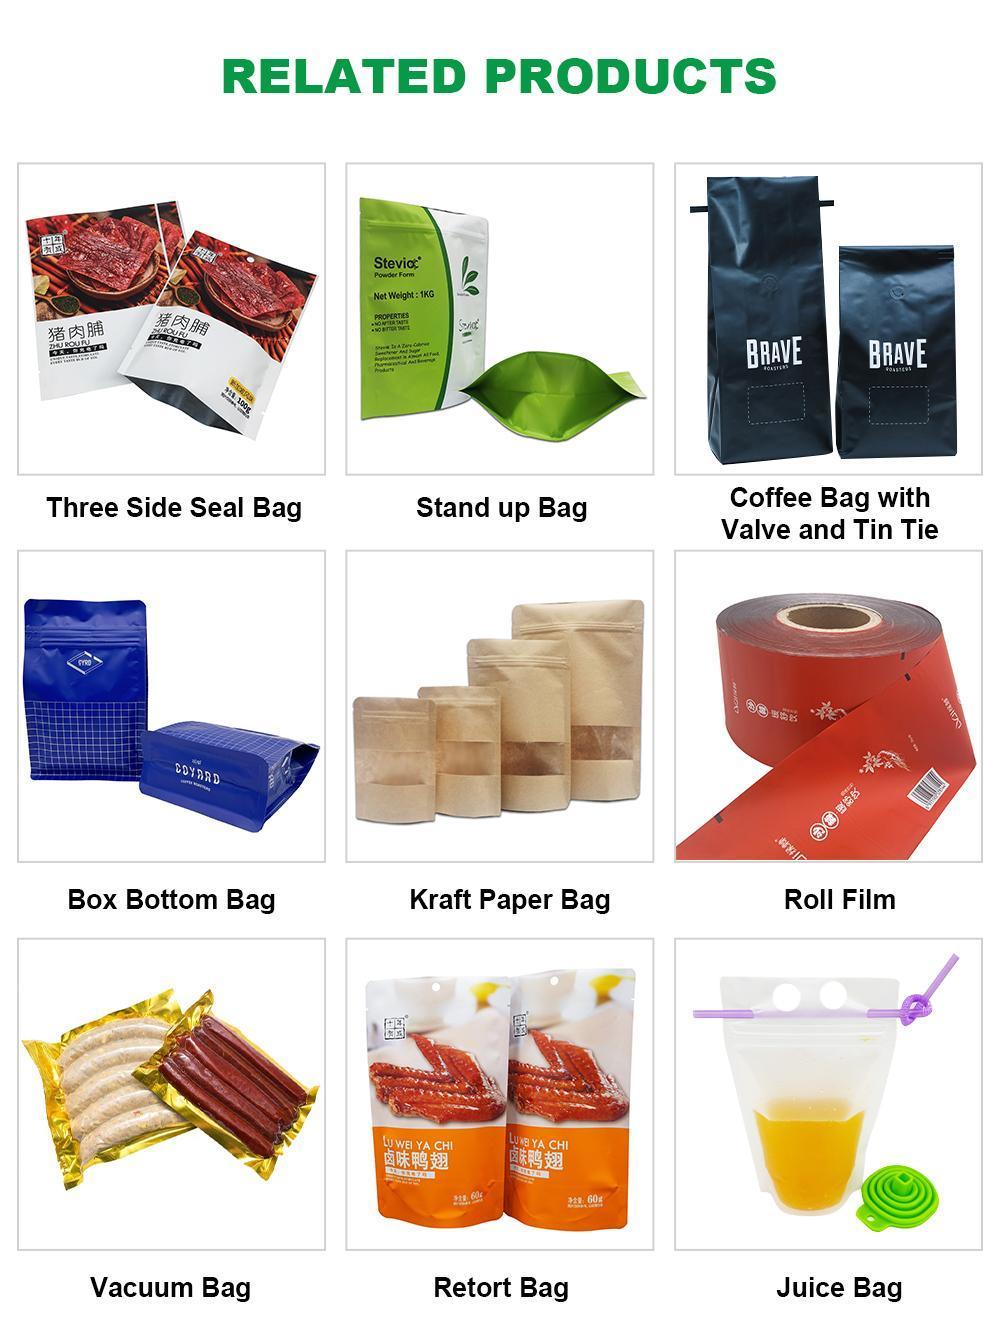 Custom Print Self Sealing Edible Aluminum Foil Food Packaging Mylar Laminated Plastic Bags